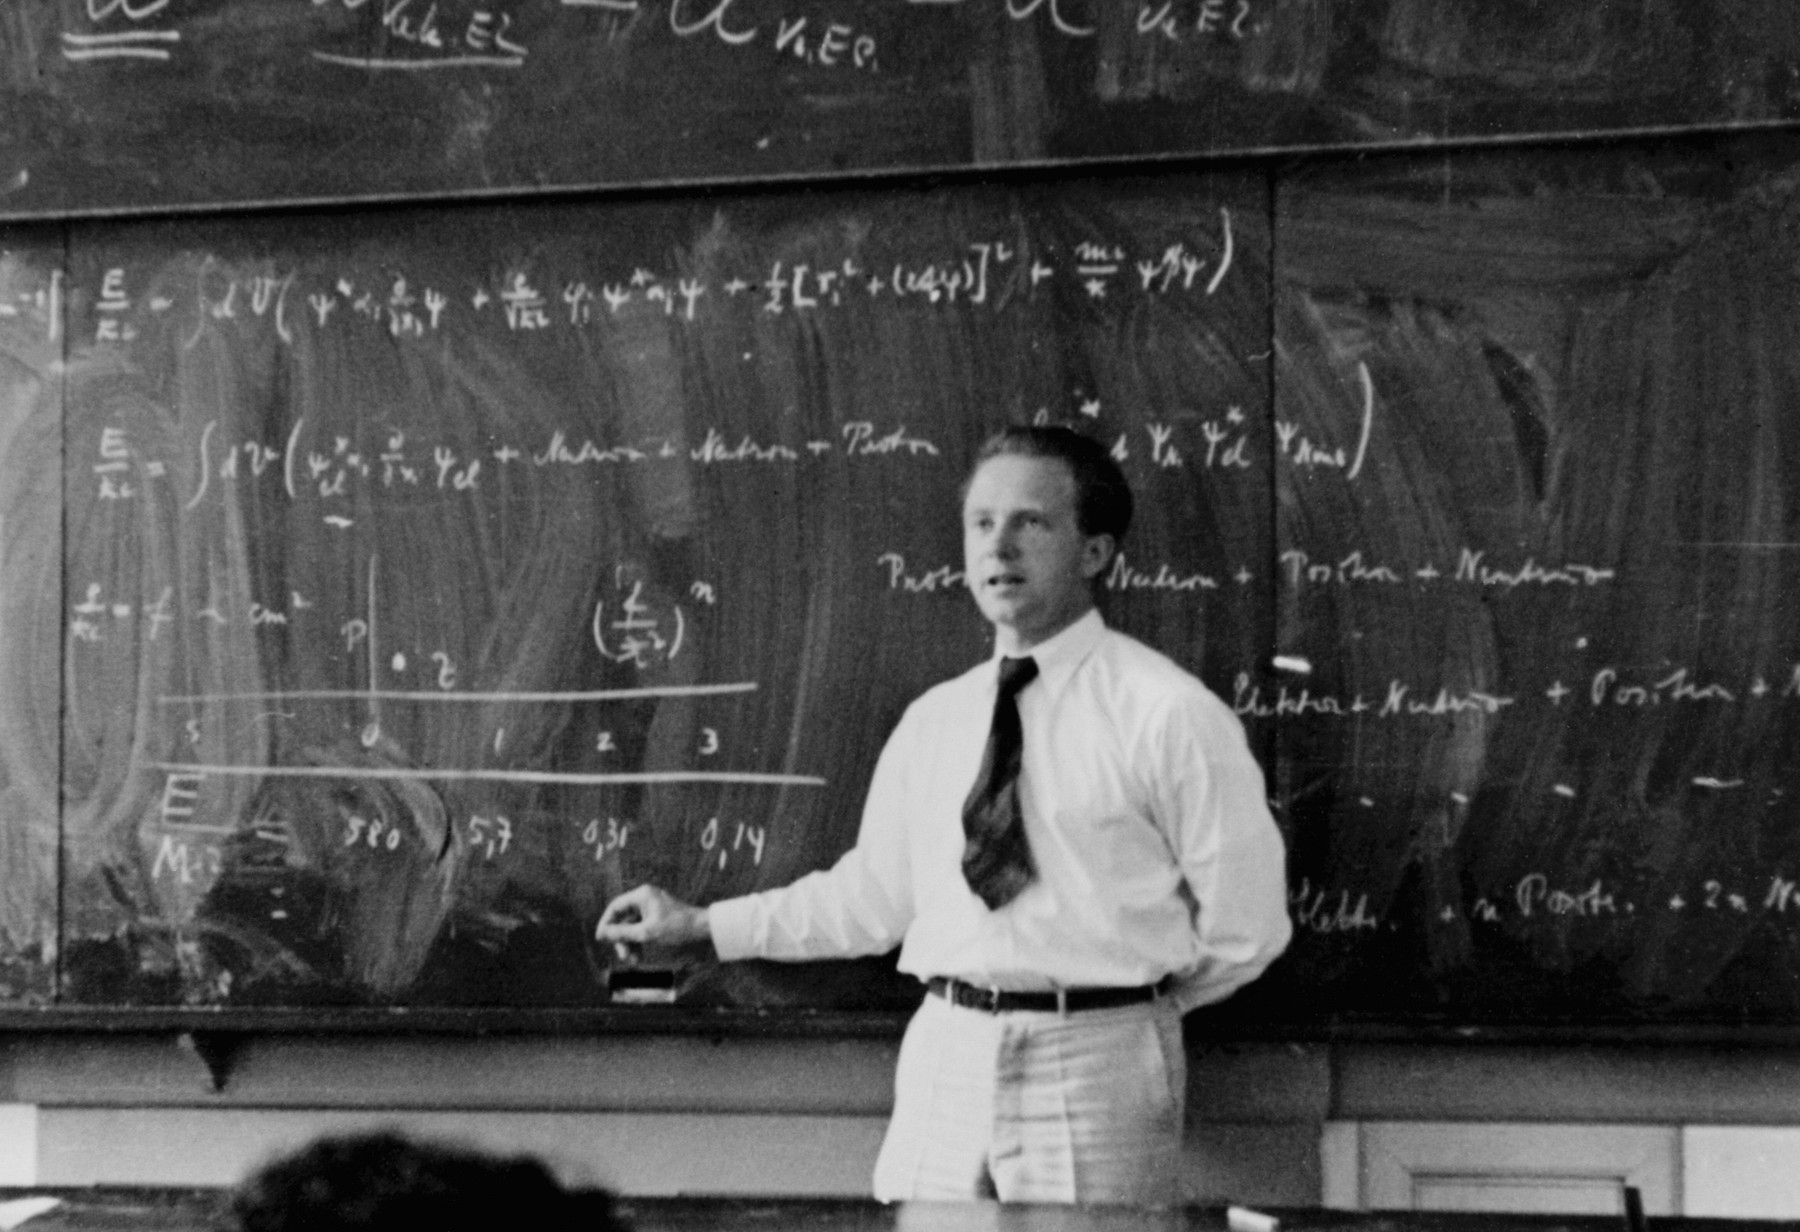 Le physicien allemand Werner Heinsenberg (1901-1976) a révolutionné la physique en découvrant en 1925 la mécanique quantique matricielle. On le voit ici expliquer la théorie quantique en 1936. Heisenberg avait rejeté la notion de trajectoire pour les électrons circulant au sein d'un atome, jetant ainsi les bases d'une nouvelle conception de la géométrie de l'espace et du temps, et pas seulement d'une nouvelle physique de la matière et du rayonnement. ©&nbsp;AIP Emilio Segre Visual Archives&nbsp;&nbsp;